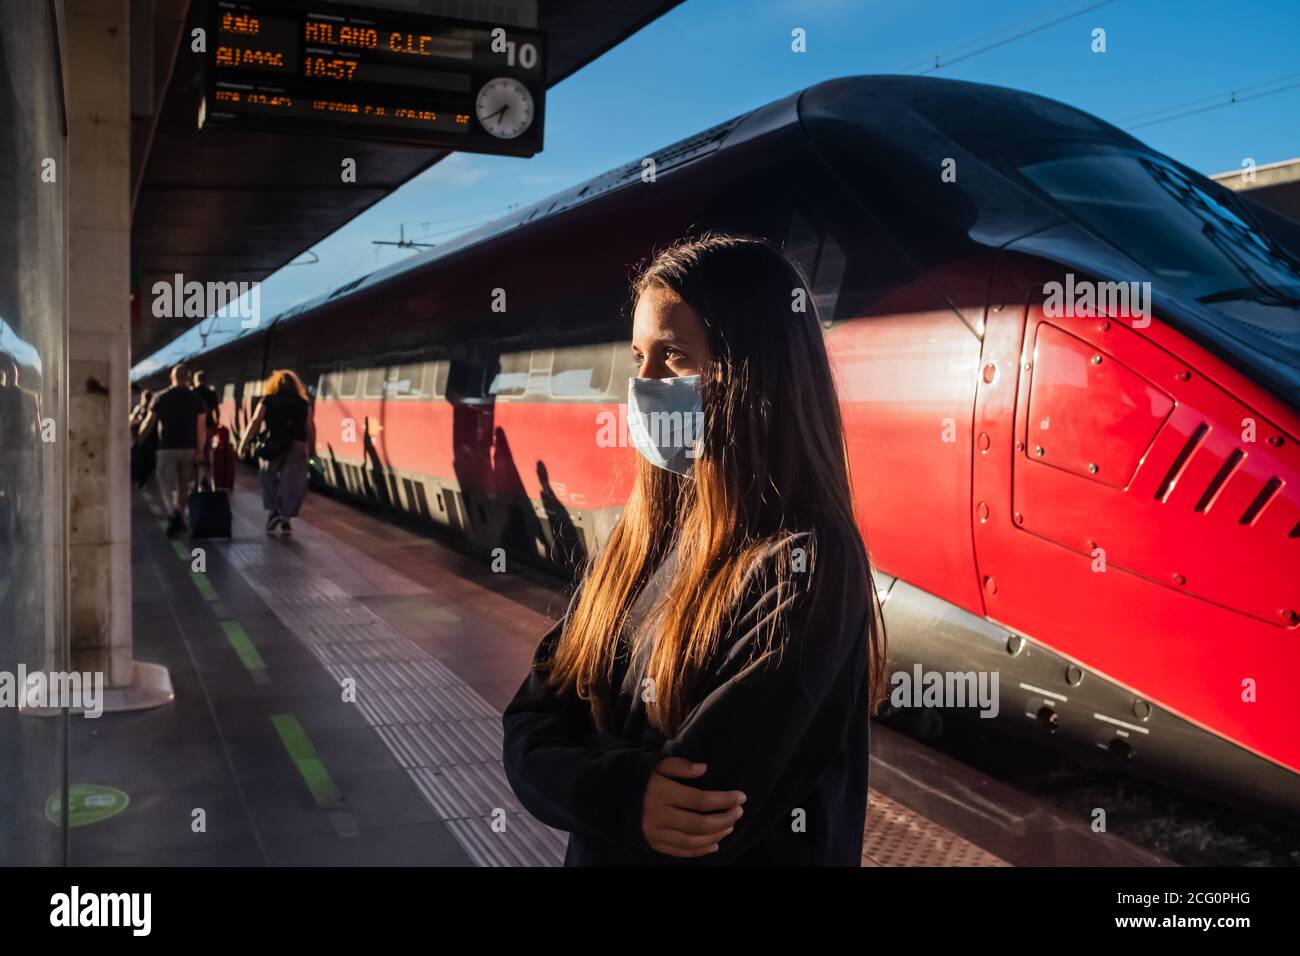 Une adolescente âgée de 13 ans vérifie l'horaire de départ à la gare de Venise (Italie). Elle porte des vêtements décontractés et un masque chirurgical. Banque D'Images